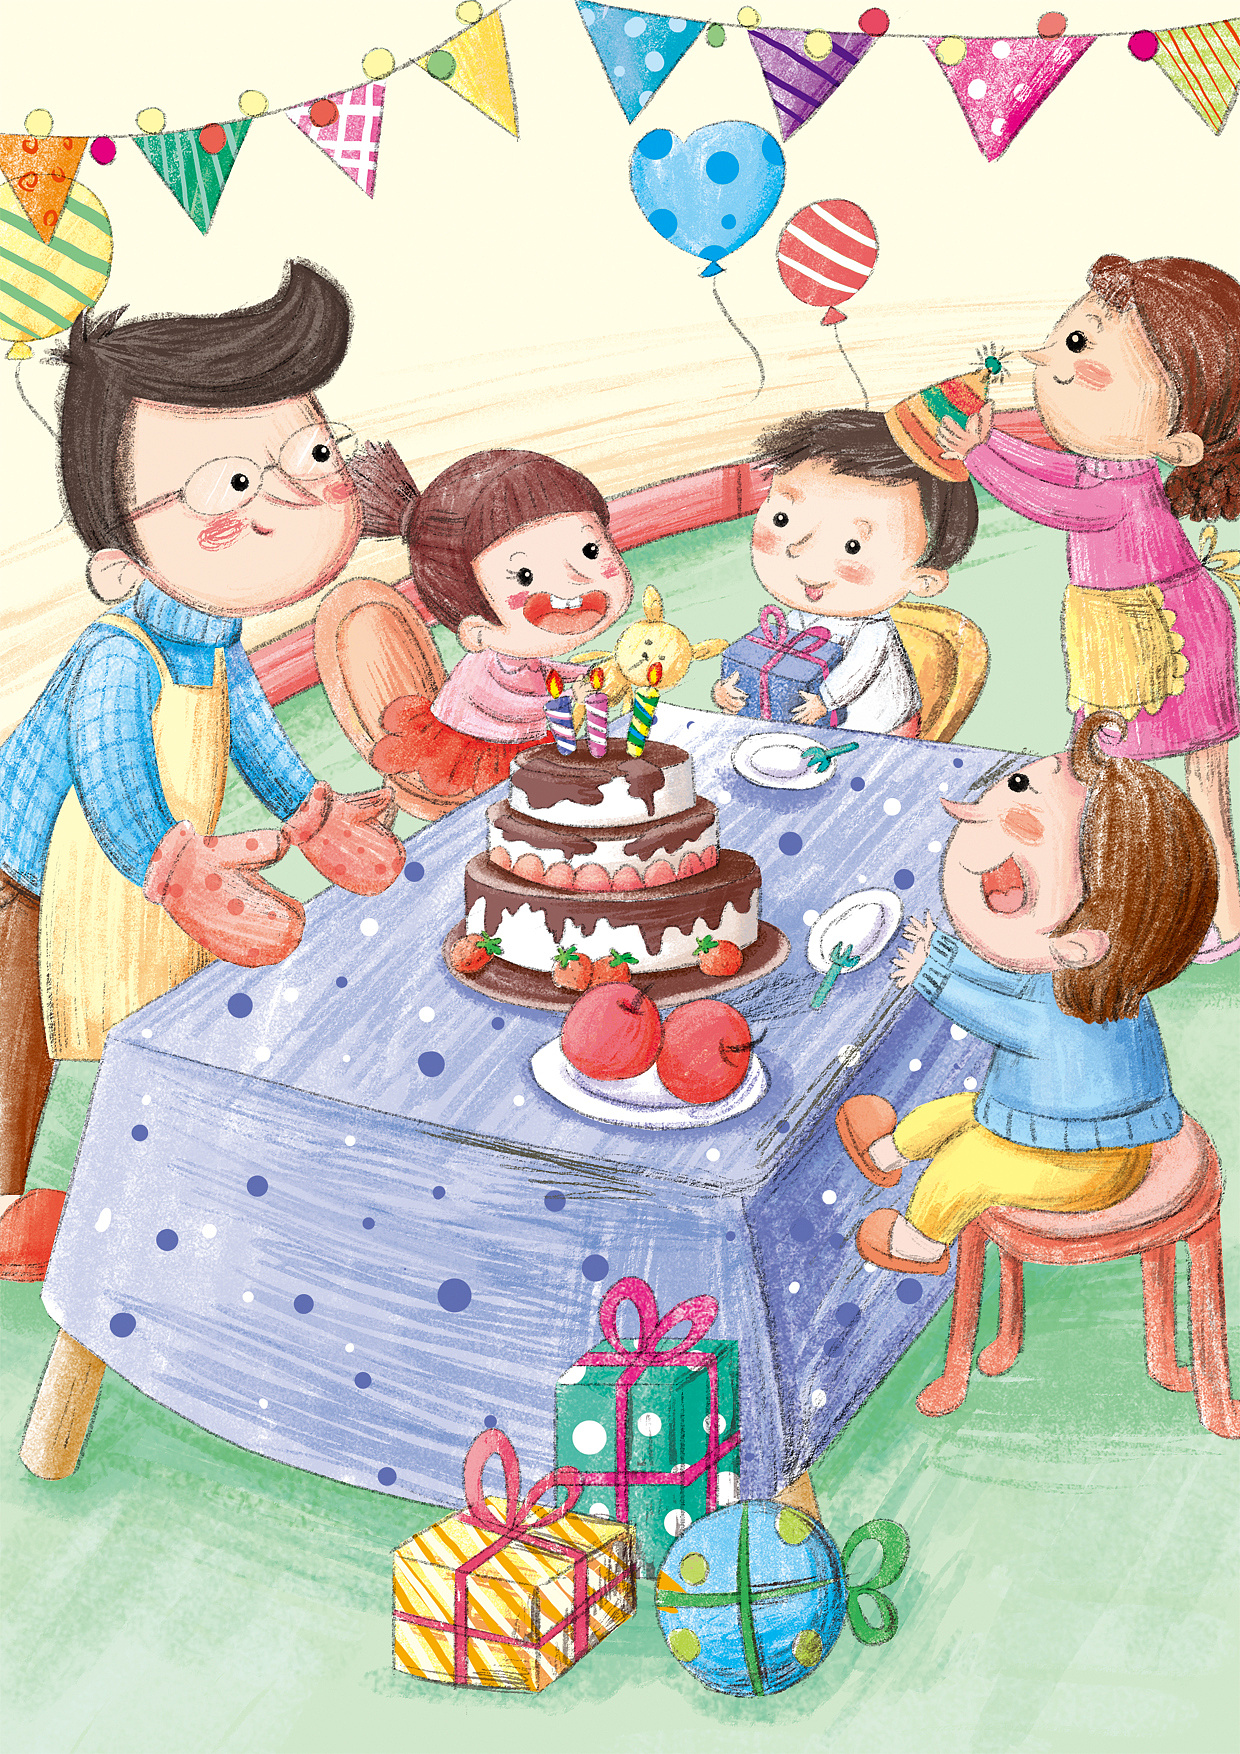 三层生日蛋糕简笔画画法图片步骤💛巧艺网